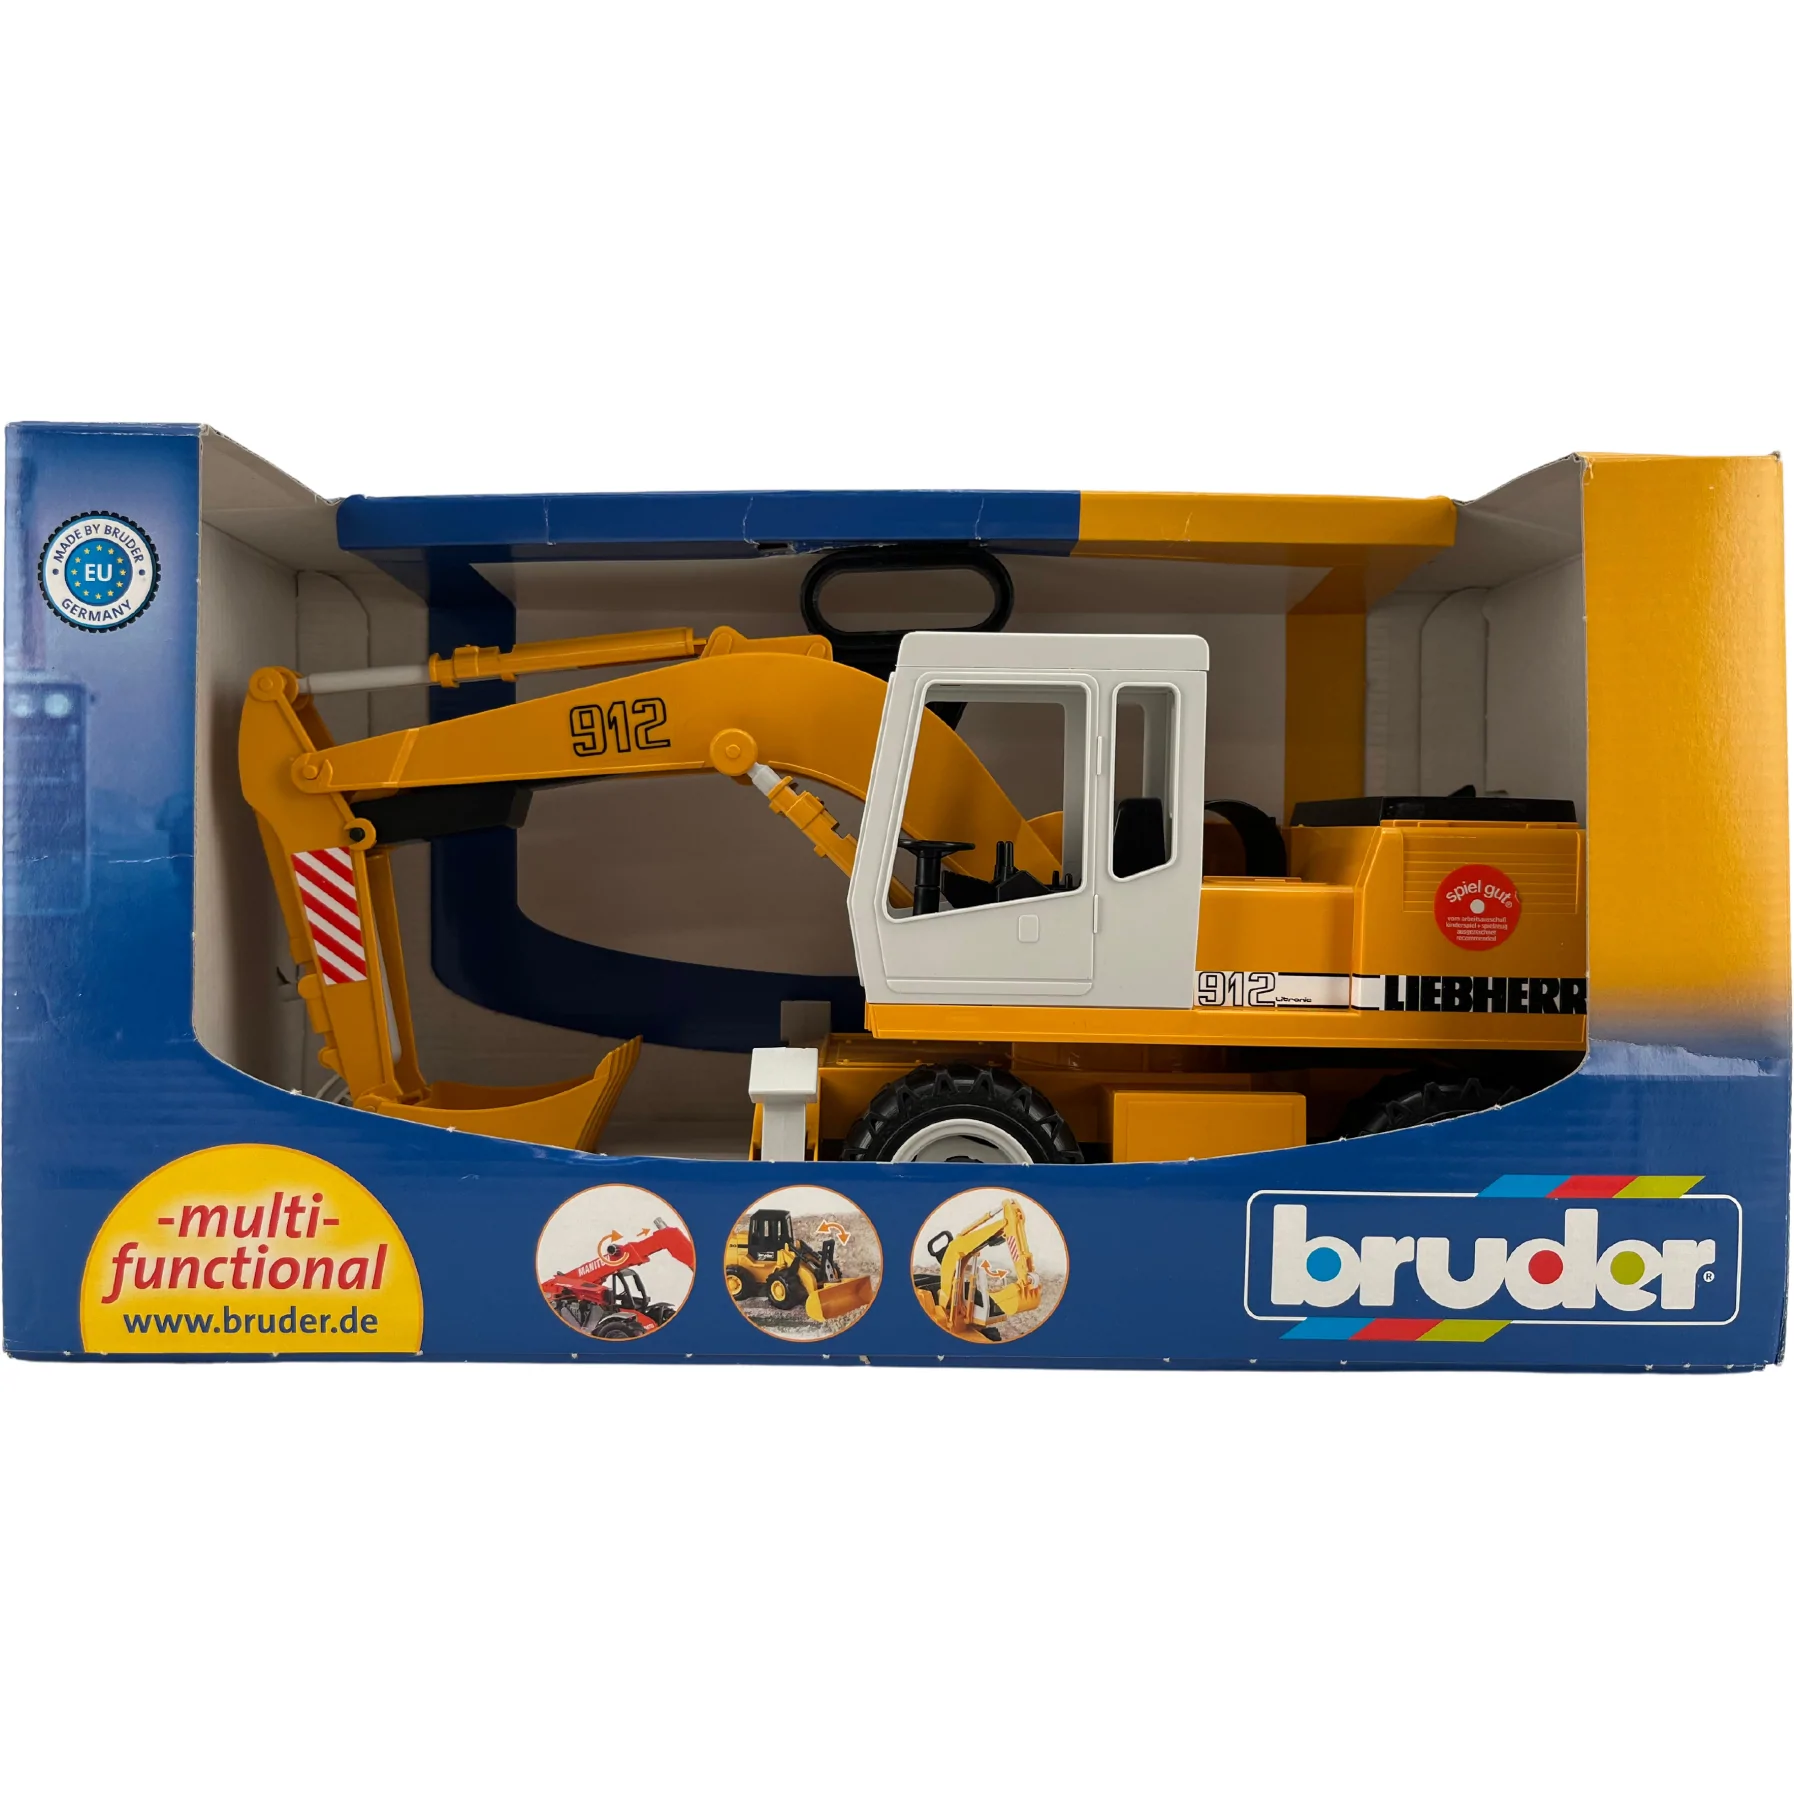 Bruder Construction Toy / Construction Excavator / Children's Toy